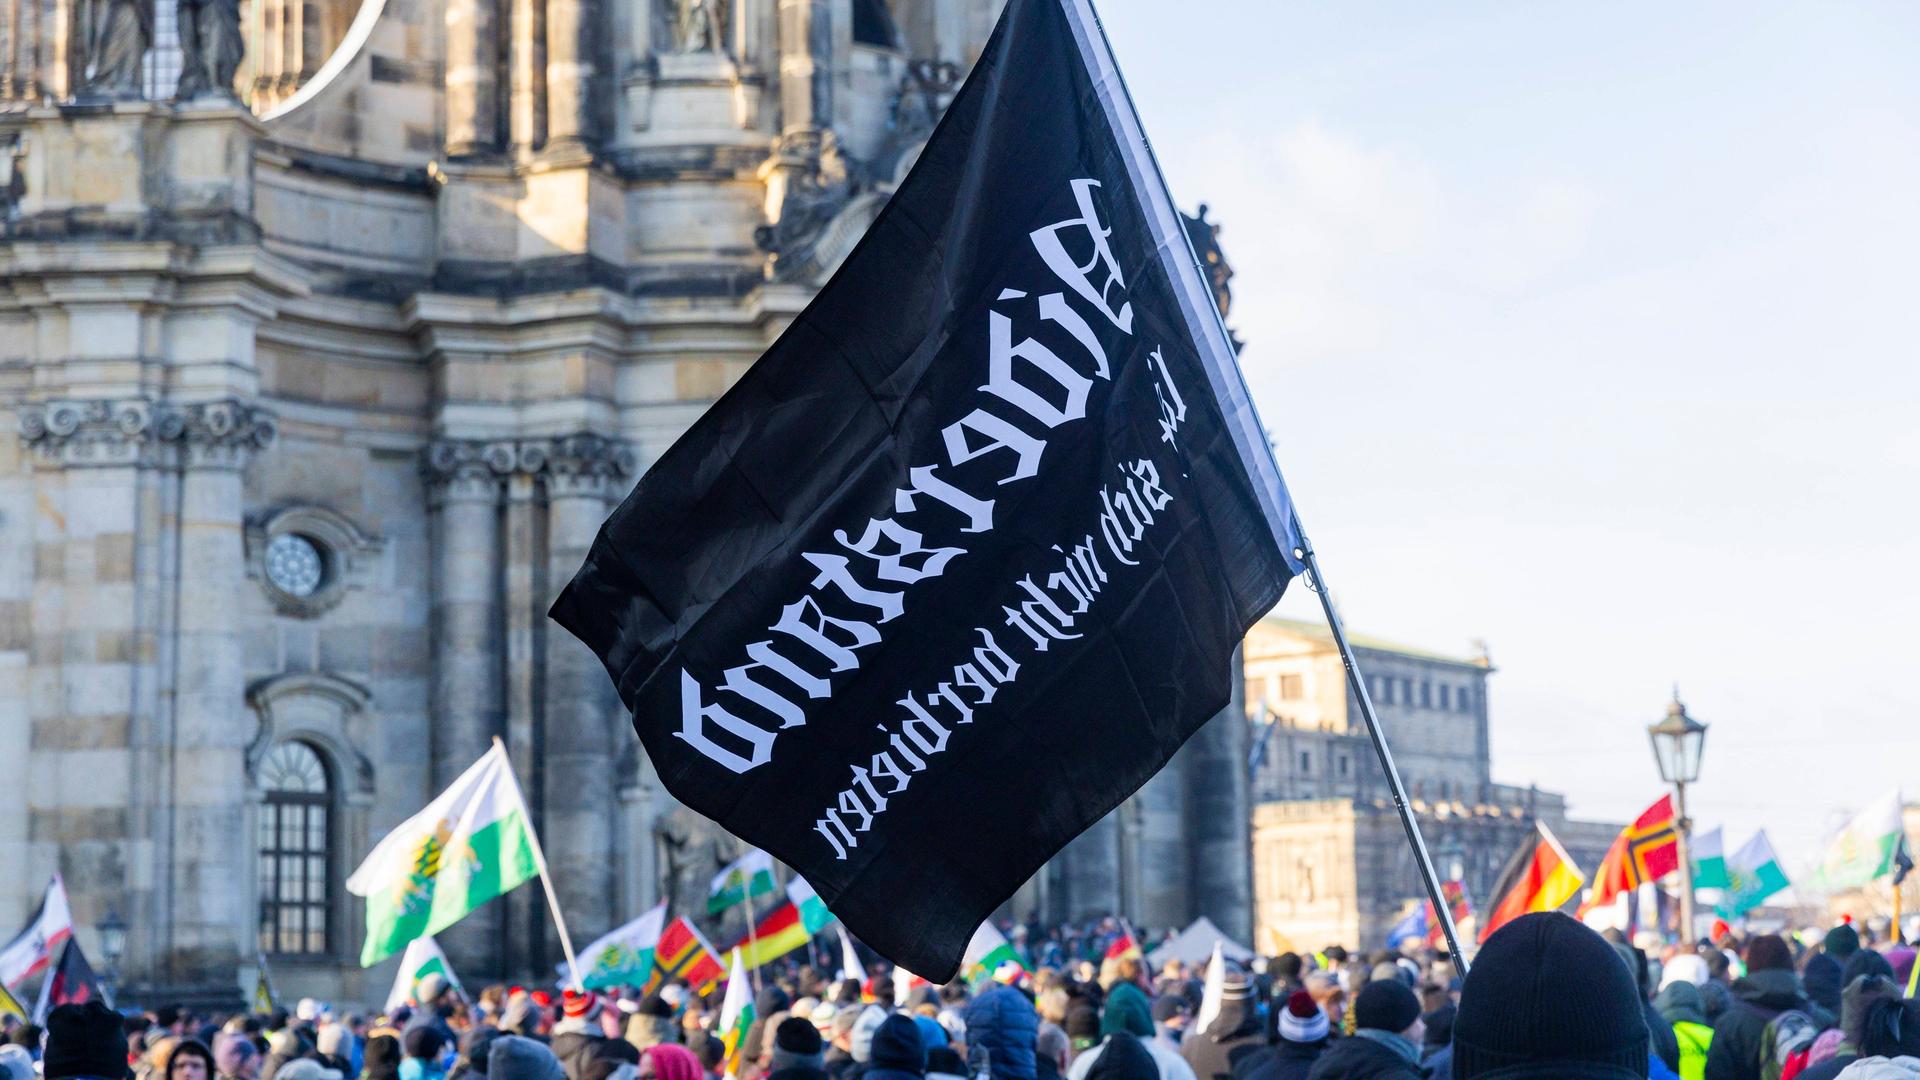 Demonstration in Dresden: Tausende Menschen demonstrieren auf dem Schlossplatz in Dresden und ziehen dann durch die Innenstadt. Dabei sind Fahnen des einstigen Königreiches Sachsen, die häufig von Anhängern der rechtsextremen Kleinstpartei Freie Sachsen mitgeführt werden, zu sehen. 